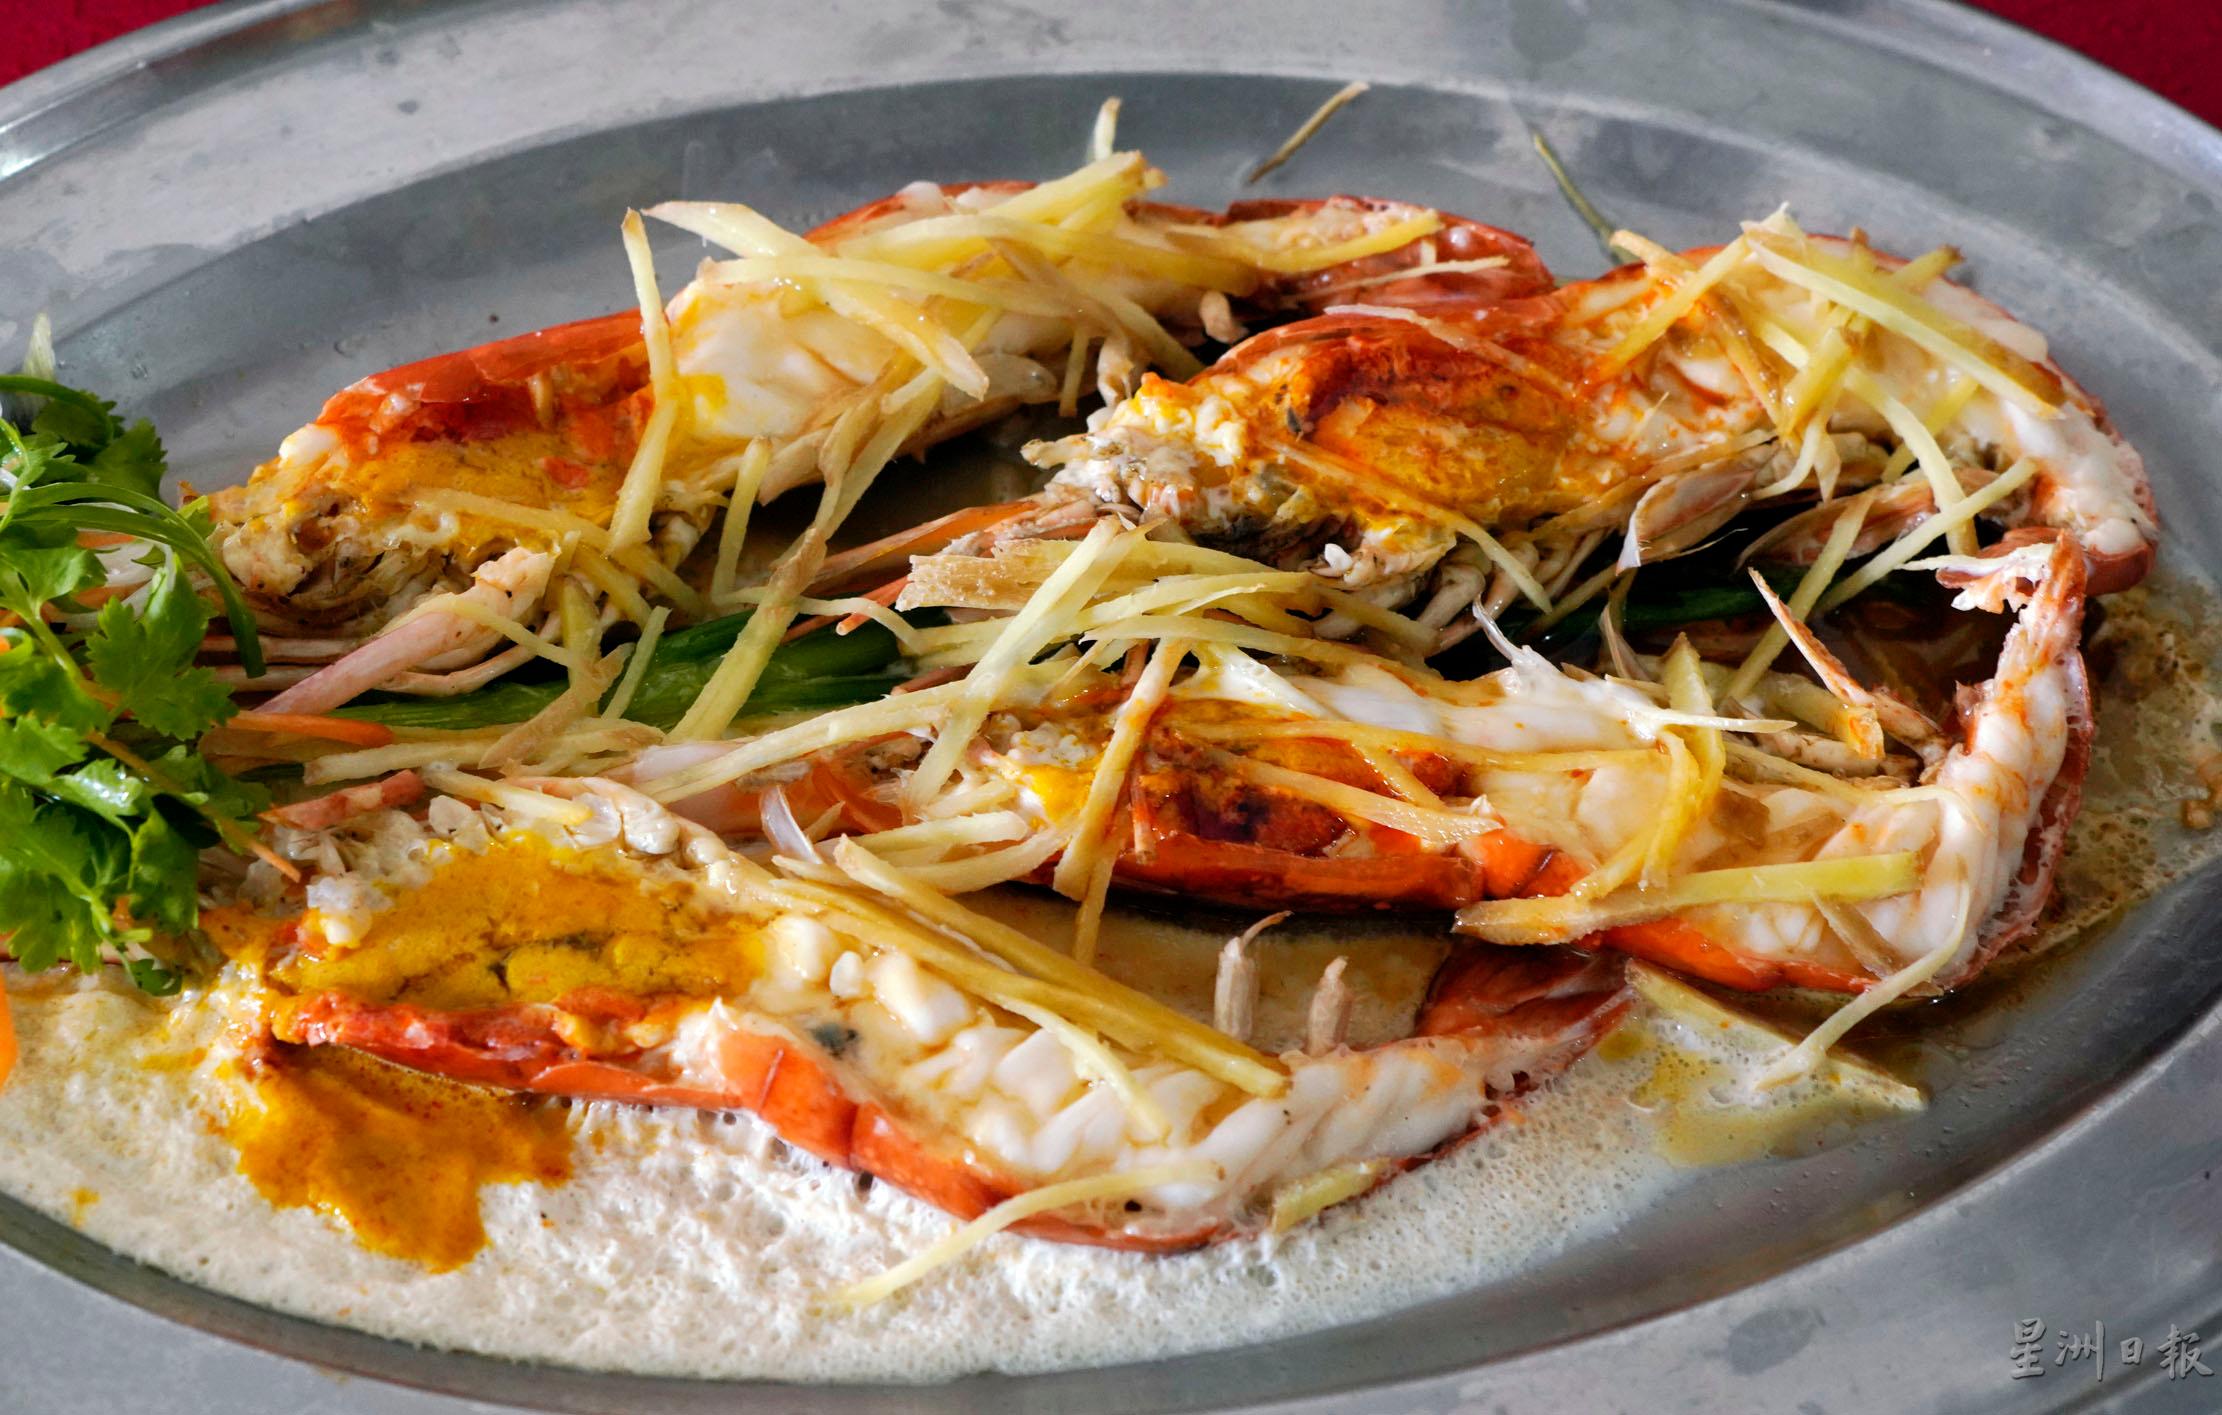 清蒸大河虾，虾肉清爽，虾头有饱满的虾膏，以清蒸的方式呈献，让人尝到十足的鲜虾味！